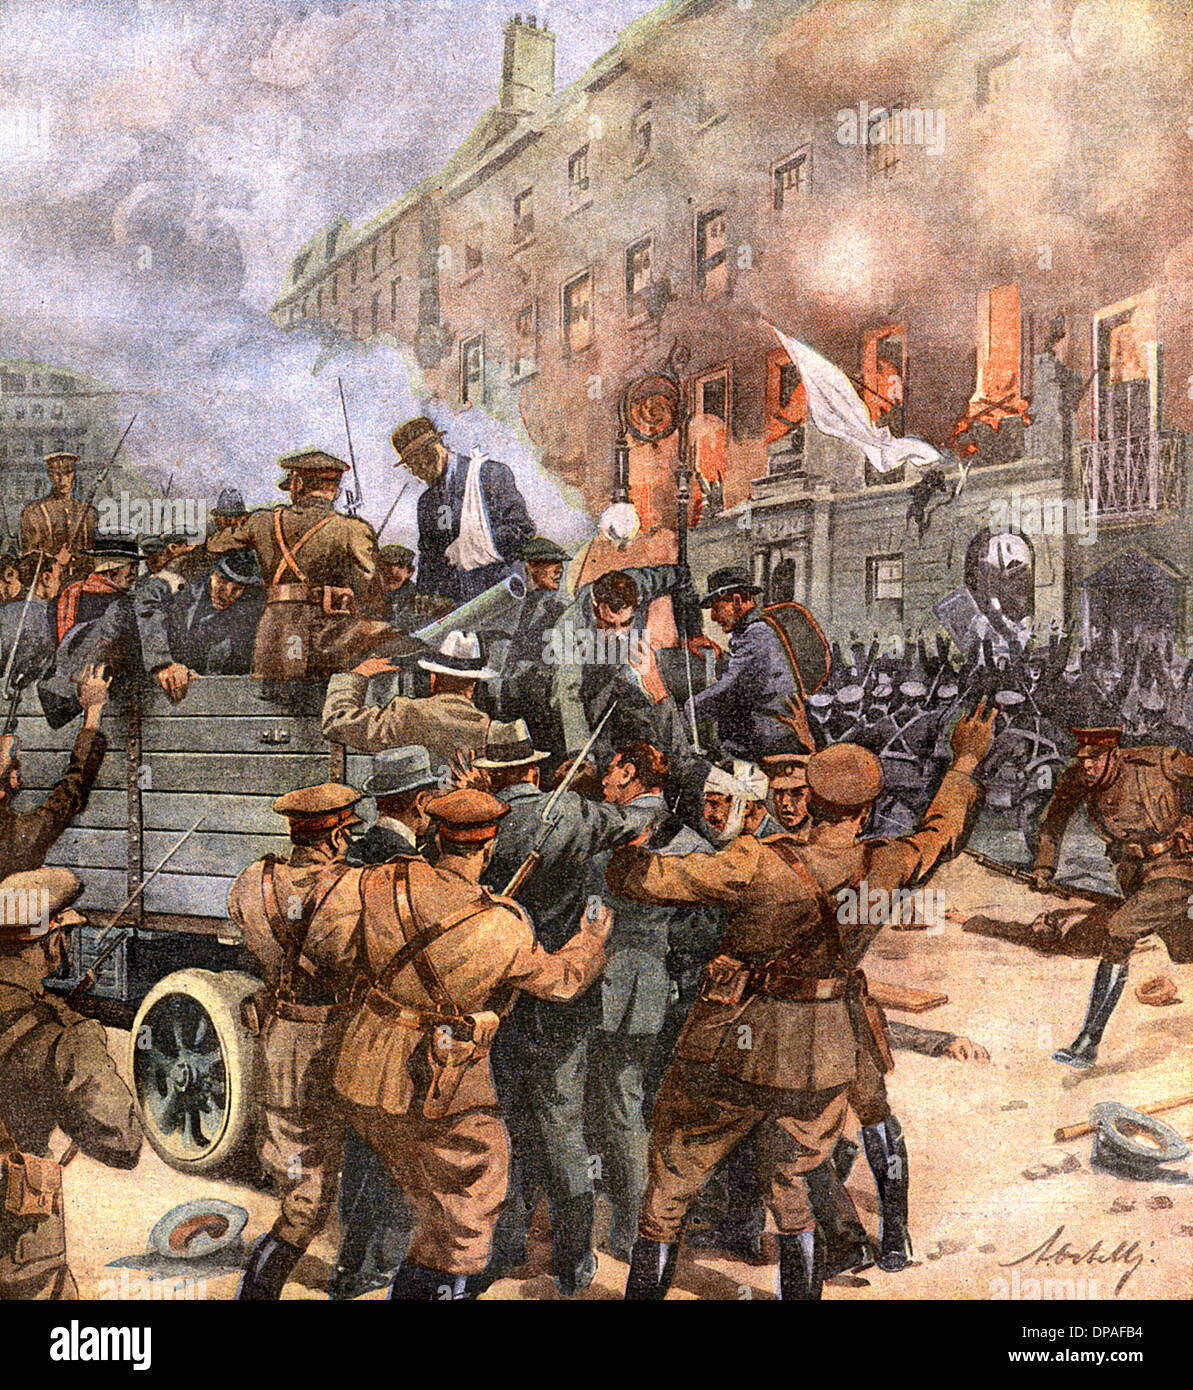 La guerra civil de 1922 de Dublín Foto de stock